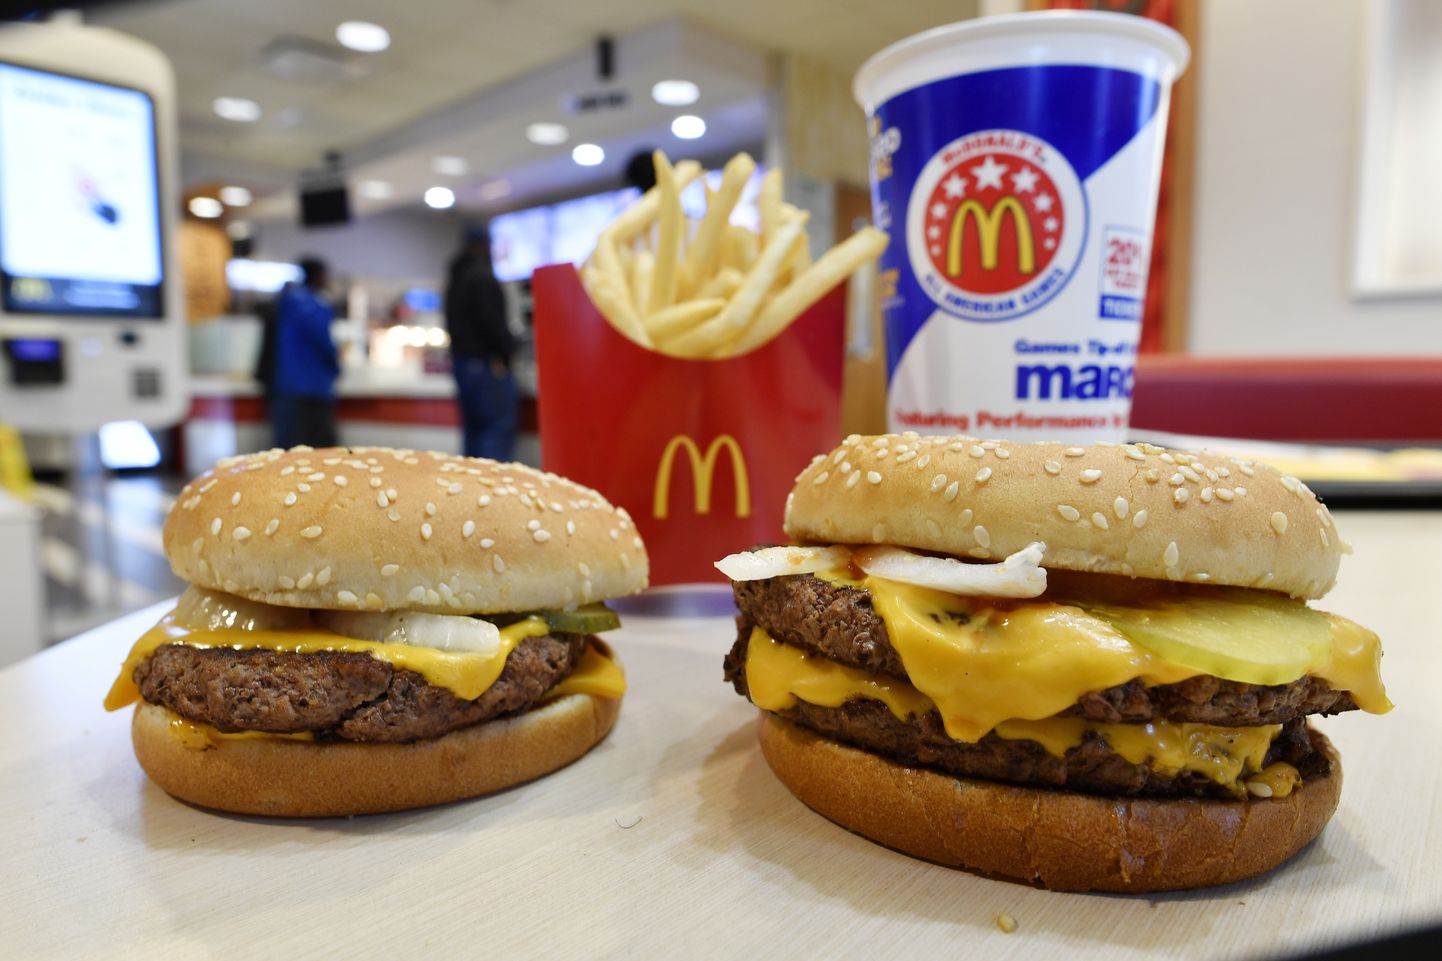 Eesti kokk sai võimaluse luua McDonald'si menüüsse uus burger.